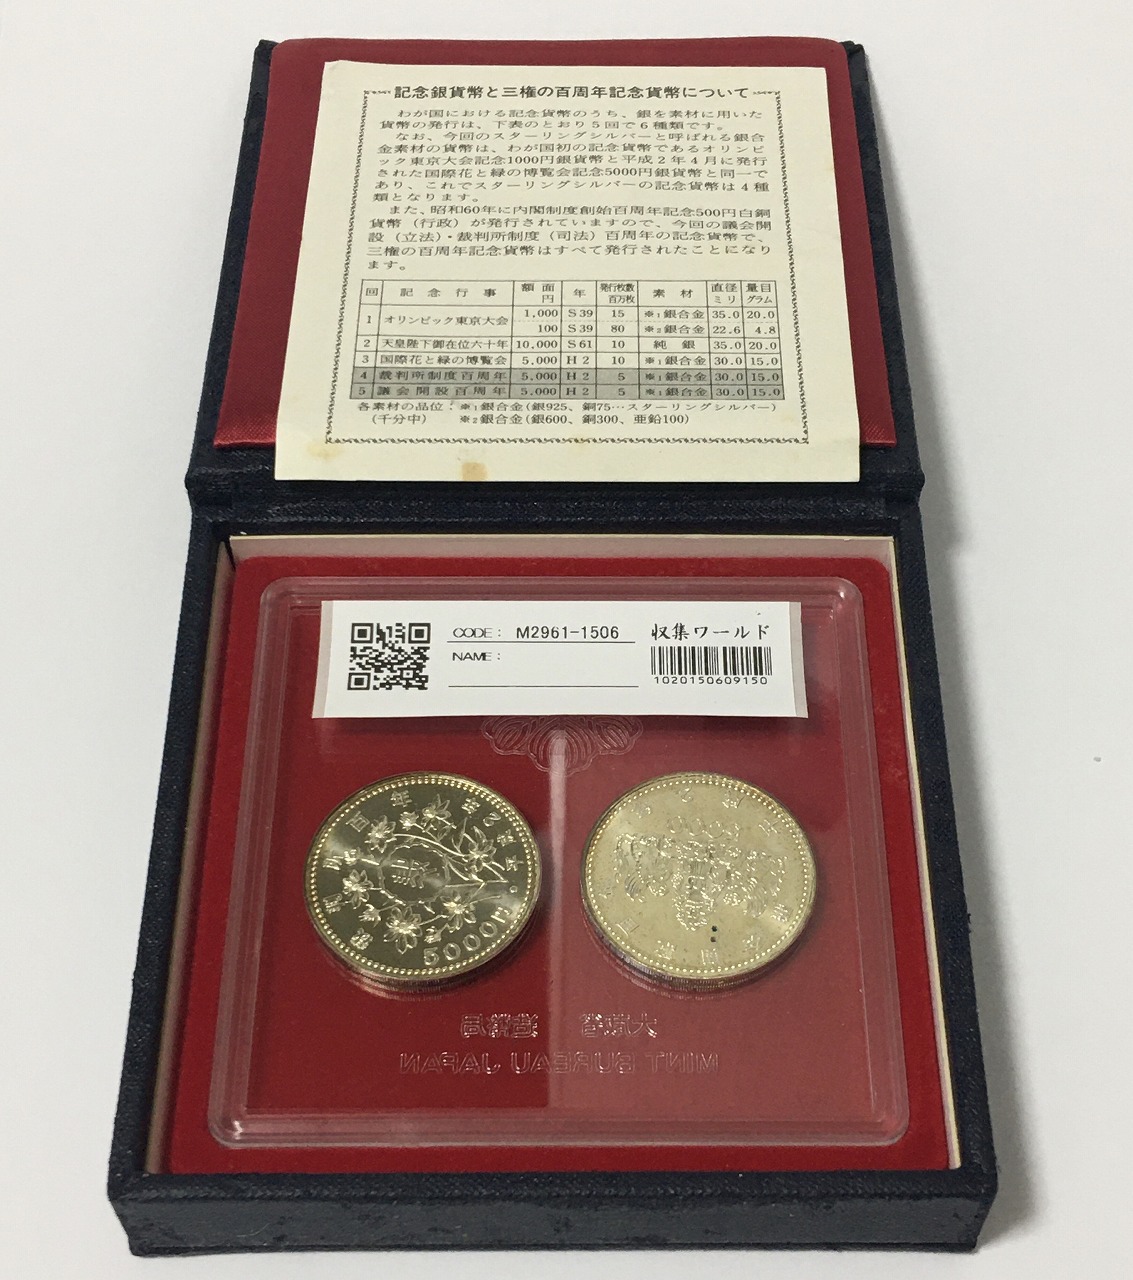 裁判所制度100周年記念・議会開設100年記念 5000円硬貨 2枚セット ①